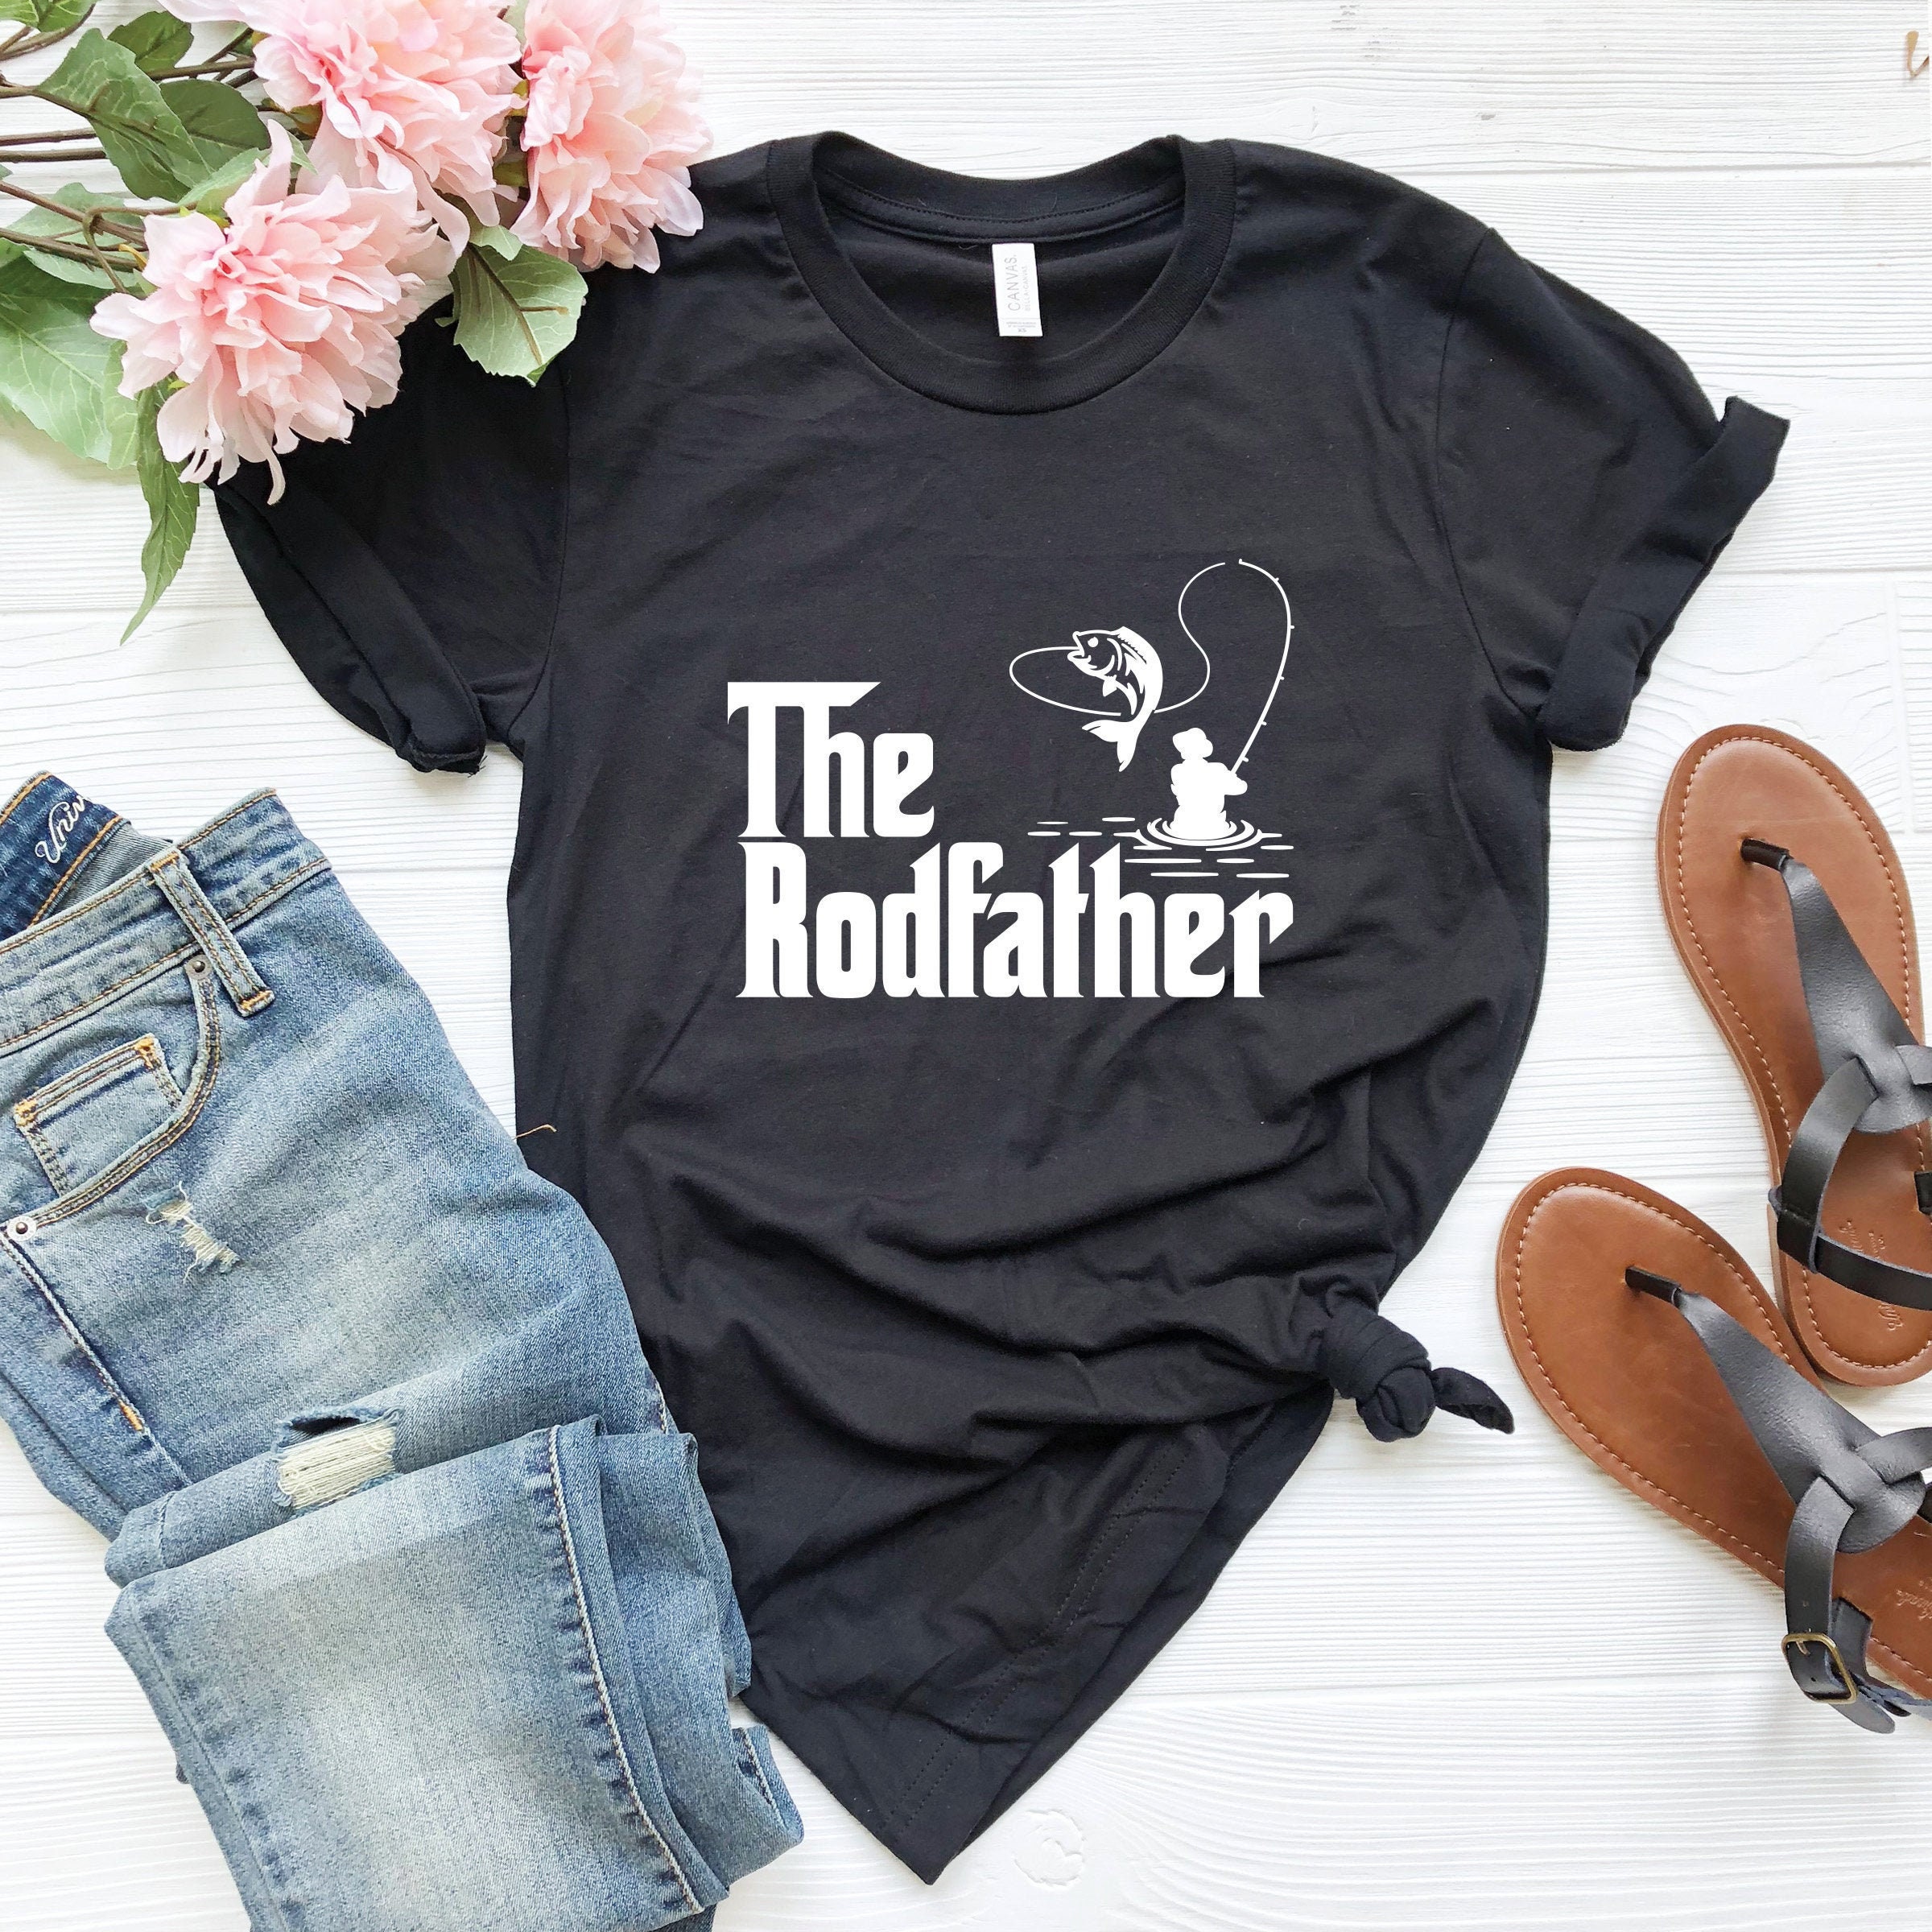 The Rodfather T-shirt, Fishing Shirt, Fishing Rod Shirt, Rustic